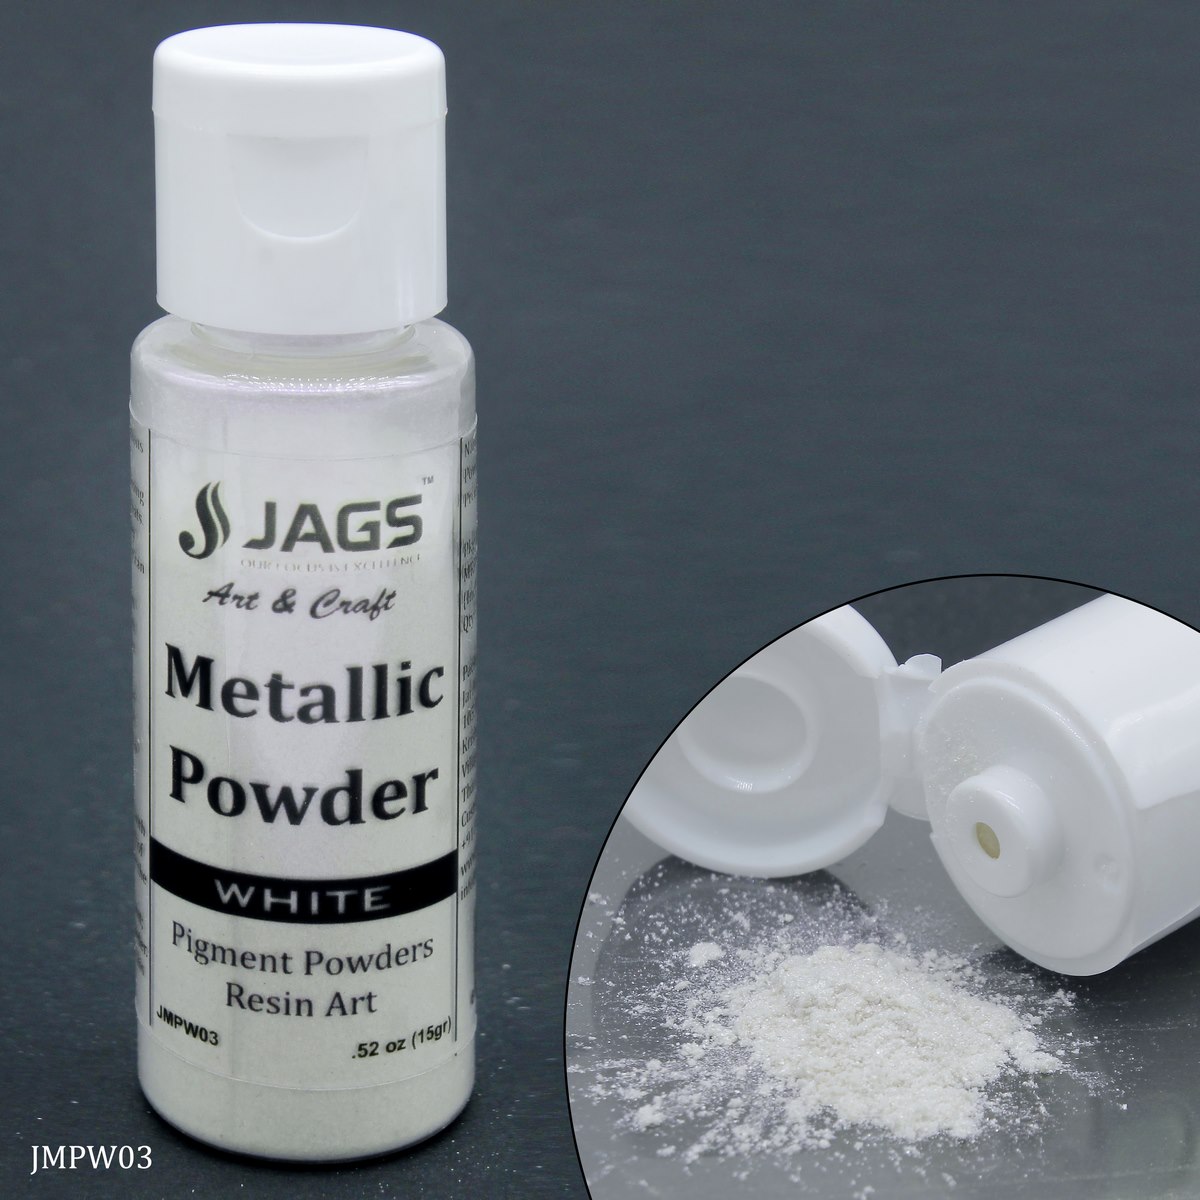 Jags Metallic Powder White 15Gms JMPW03